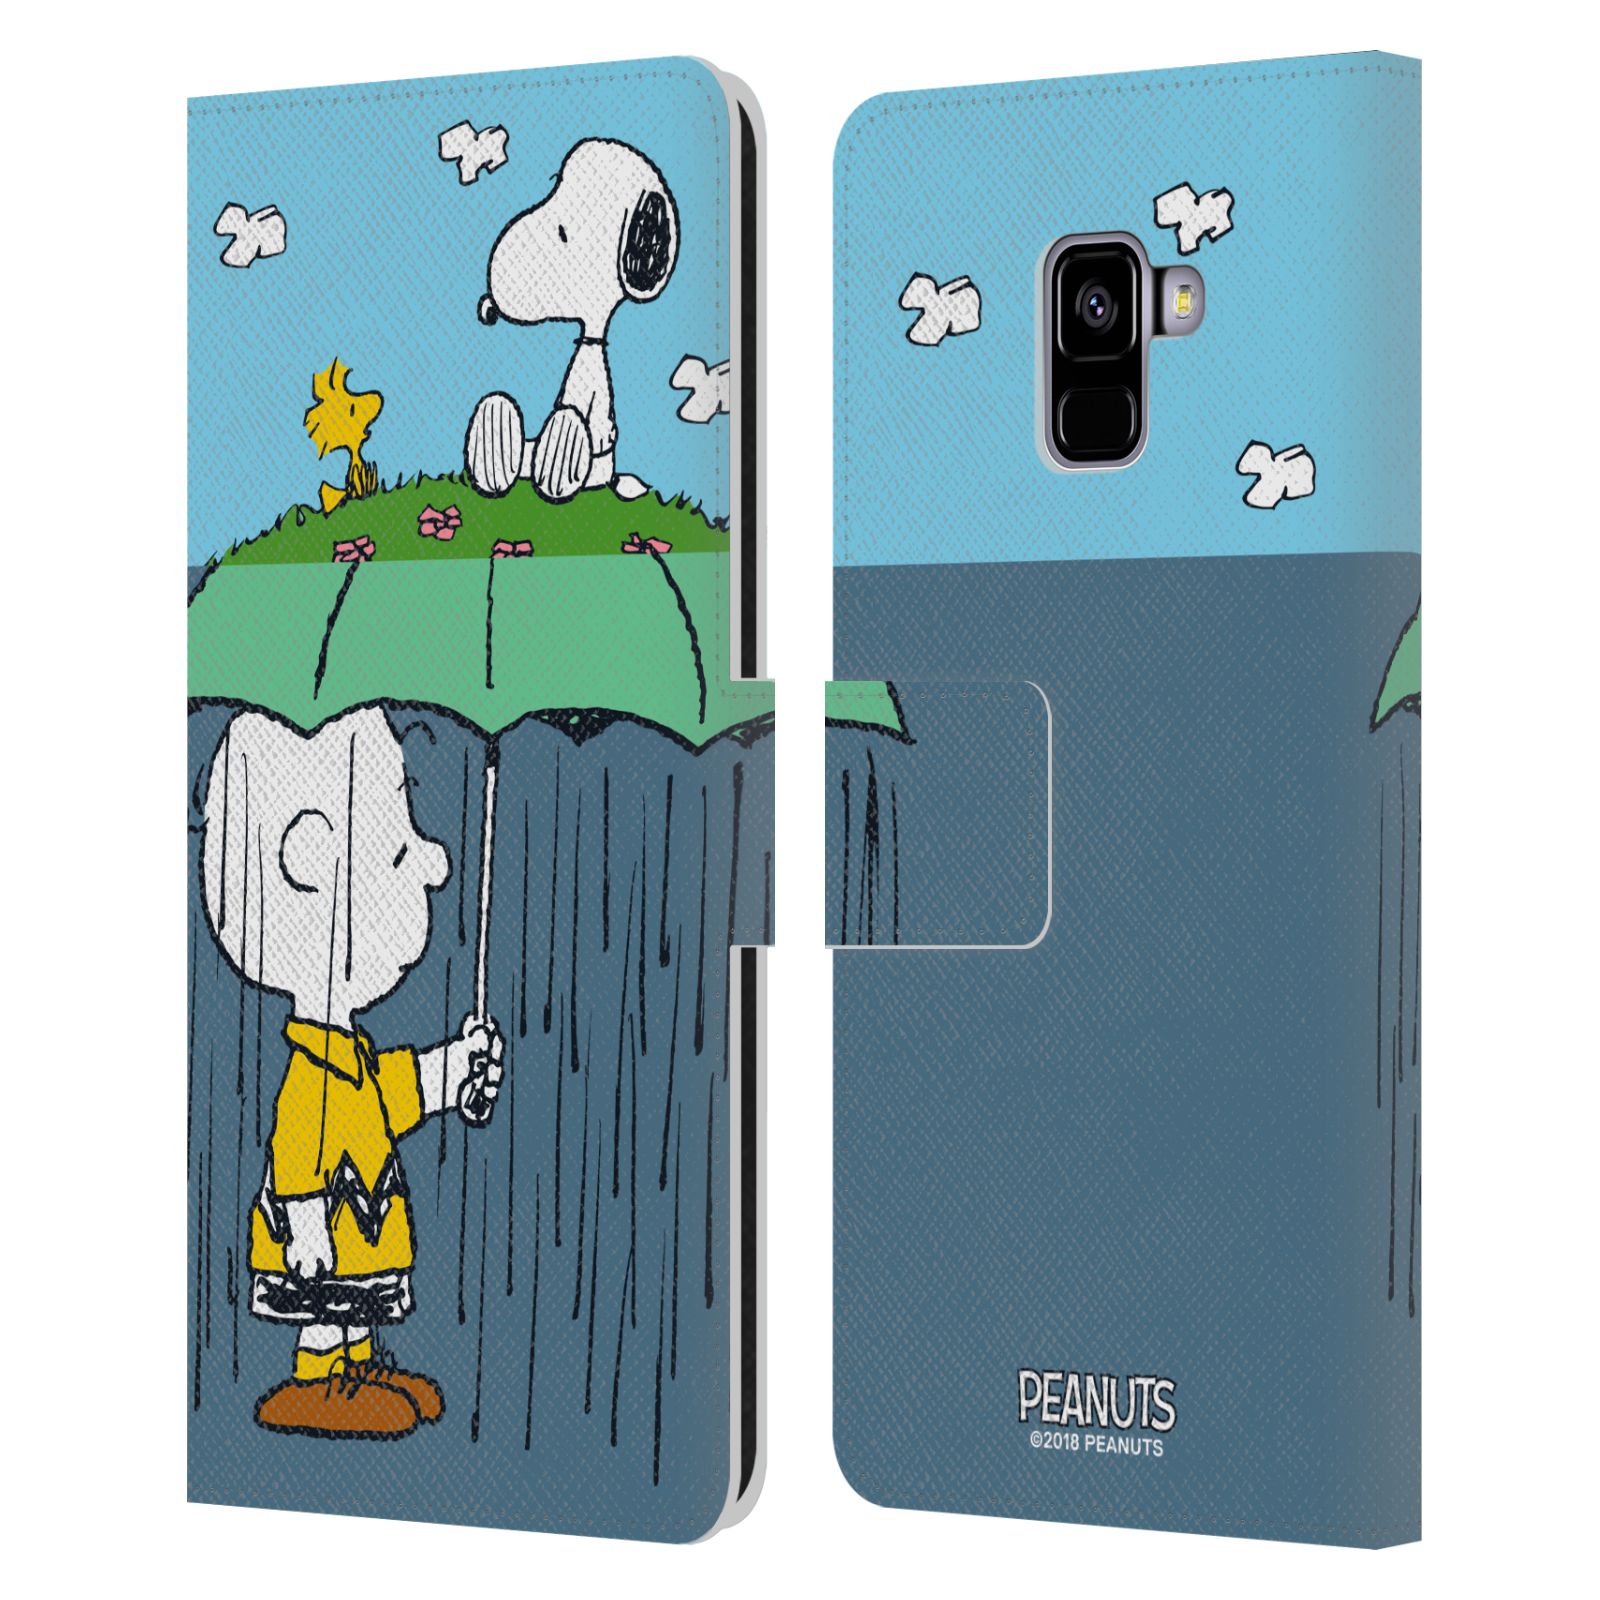 Pouzdro na mobil Samsung Galaxy A8 PLUS 2018 - Head Case - Peanuts - Snoopy, Charlie a ptáček Woodstock